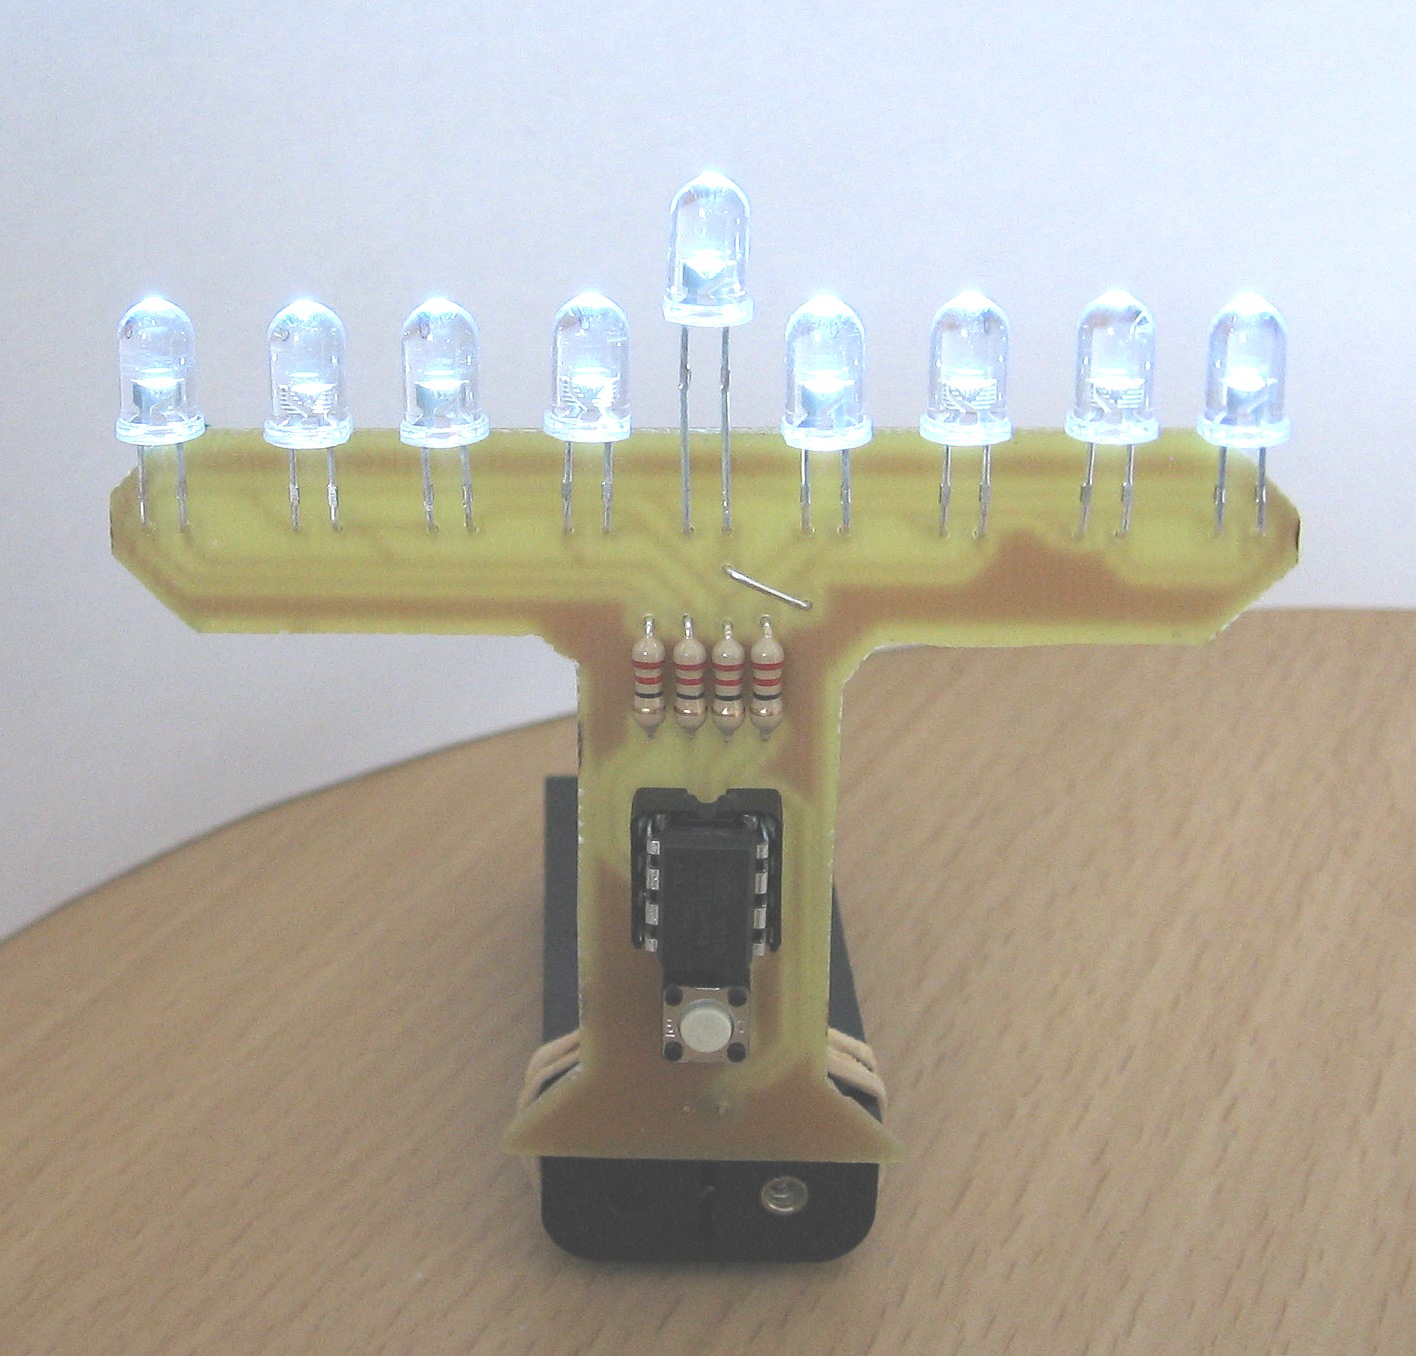 LED Menorah powered by AVR tiny13